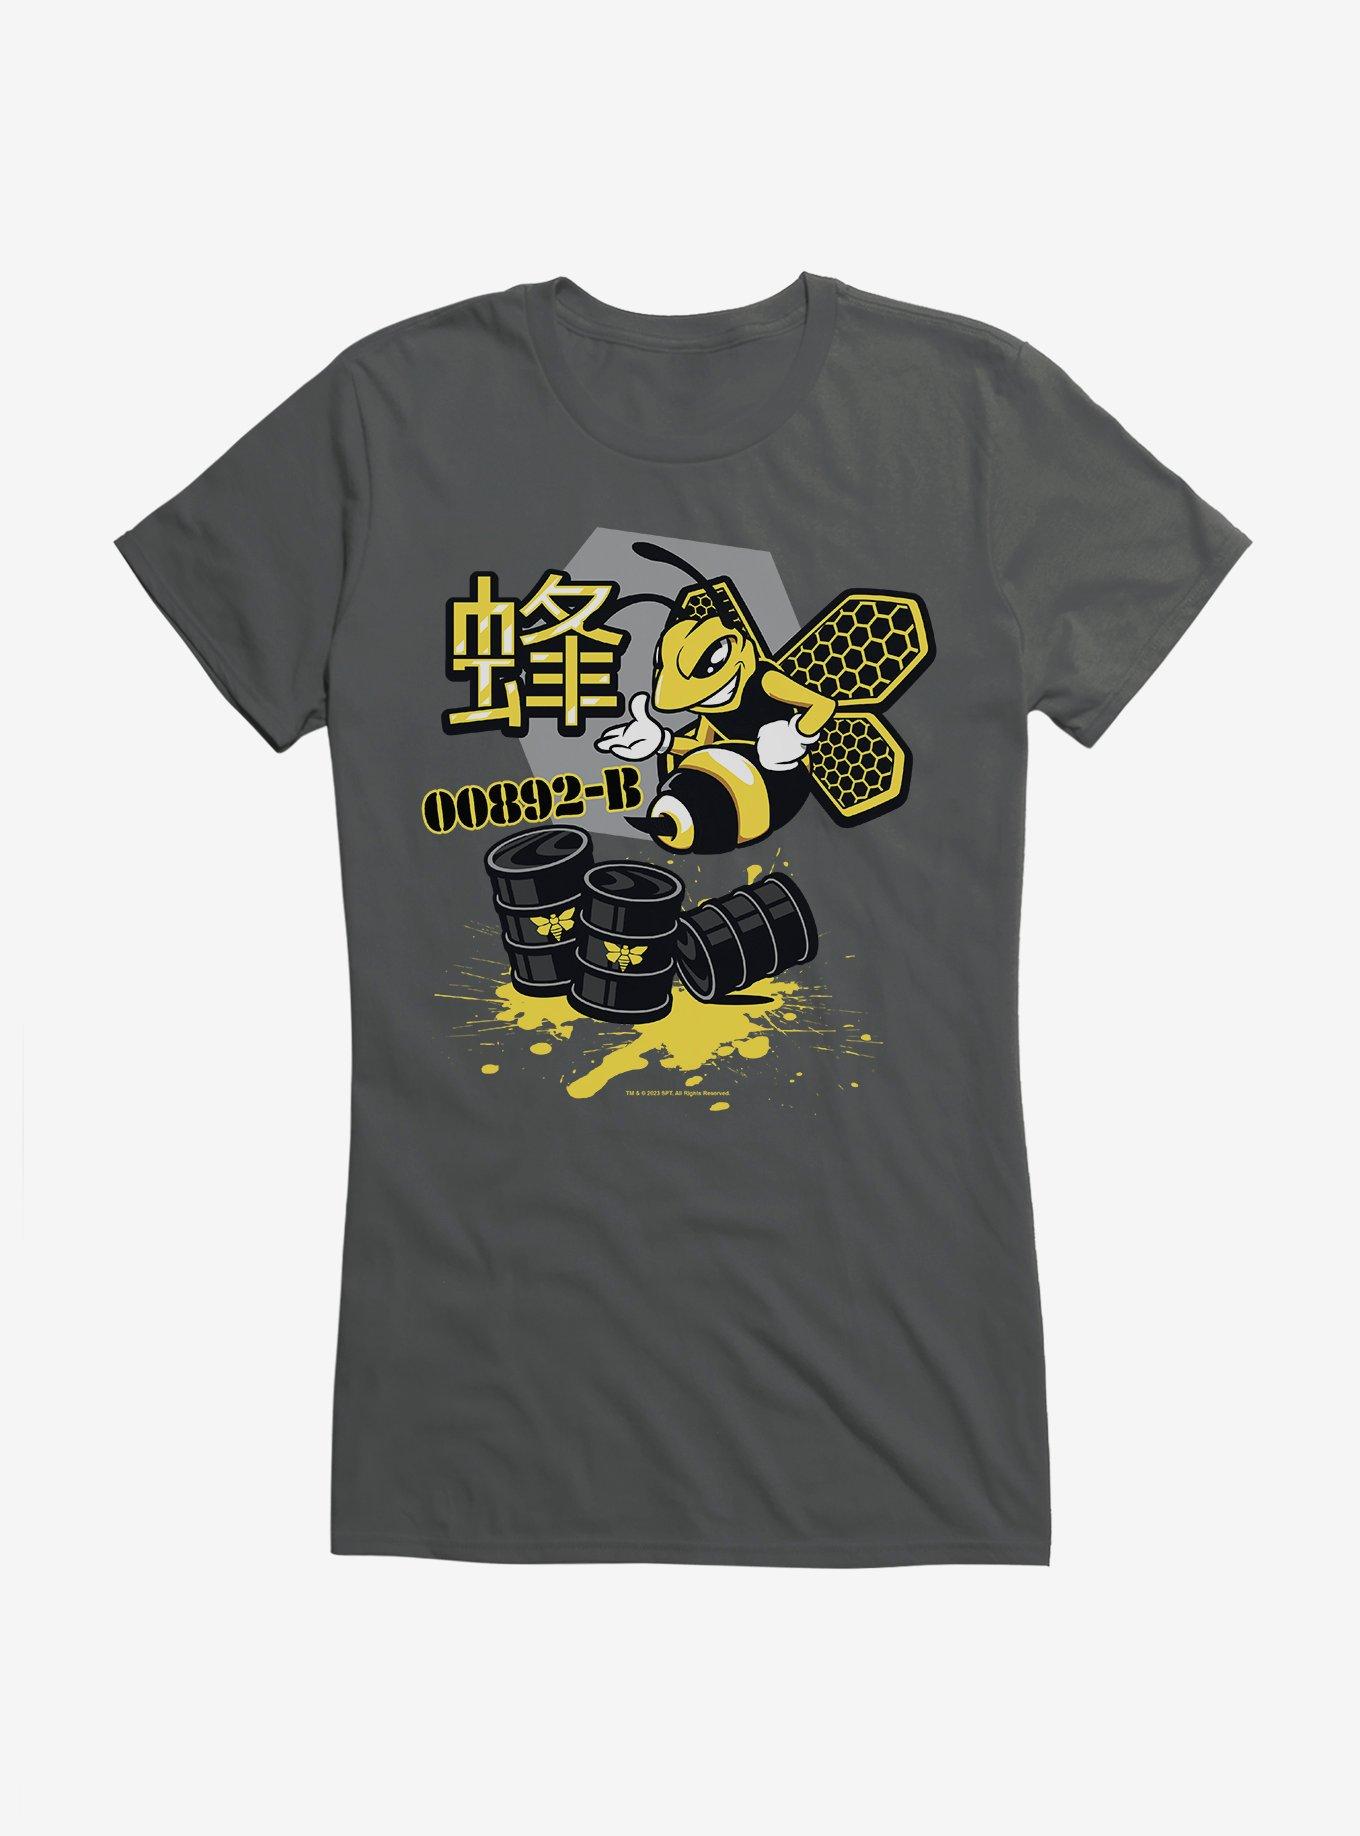 Breaking Bad 00892-B Barrels Girls T-Shirt, , hi-res